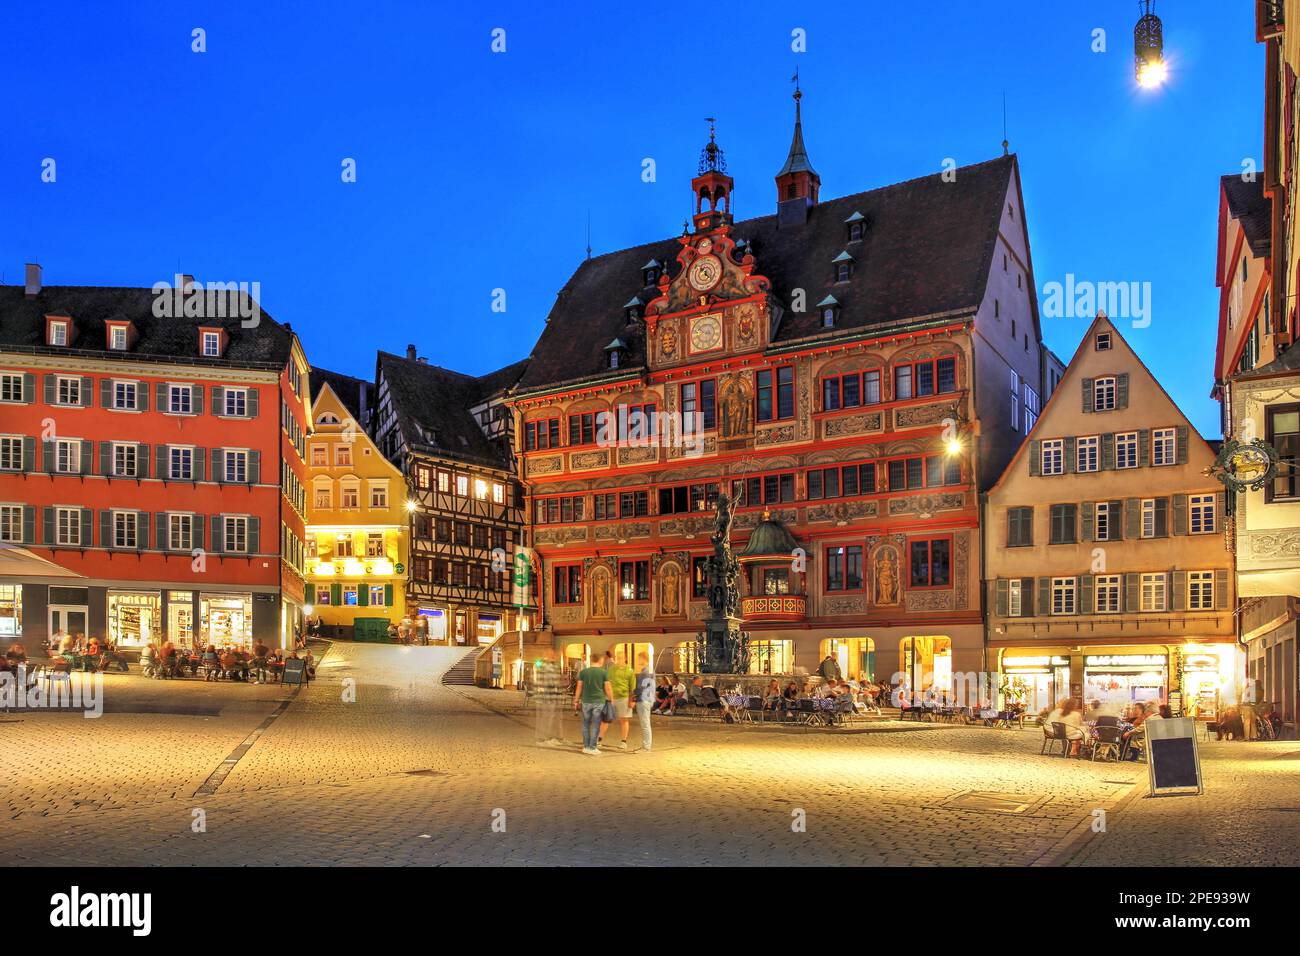 Serata estiva a Marktplatz (Piazza del mercato) nella città universitaria di Tübingen, nella regione tedesca di Baden-Württemberg, con il municipio (Rathaus) Foto Stock